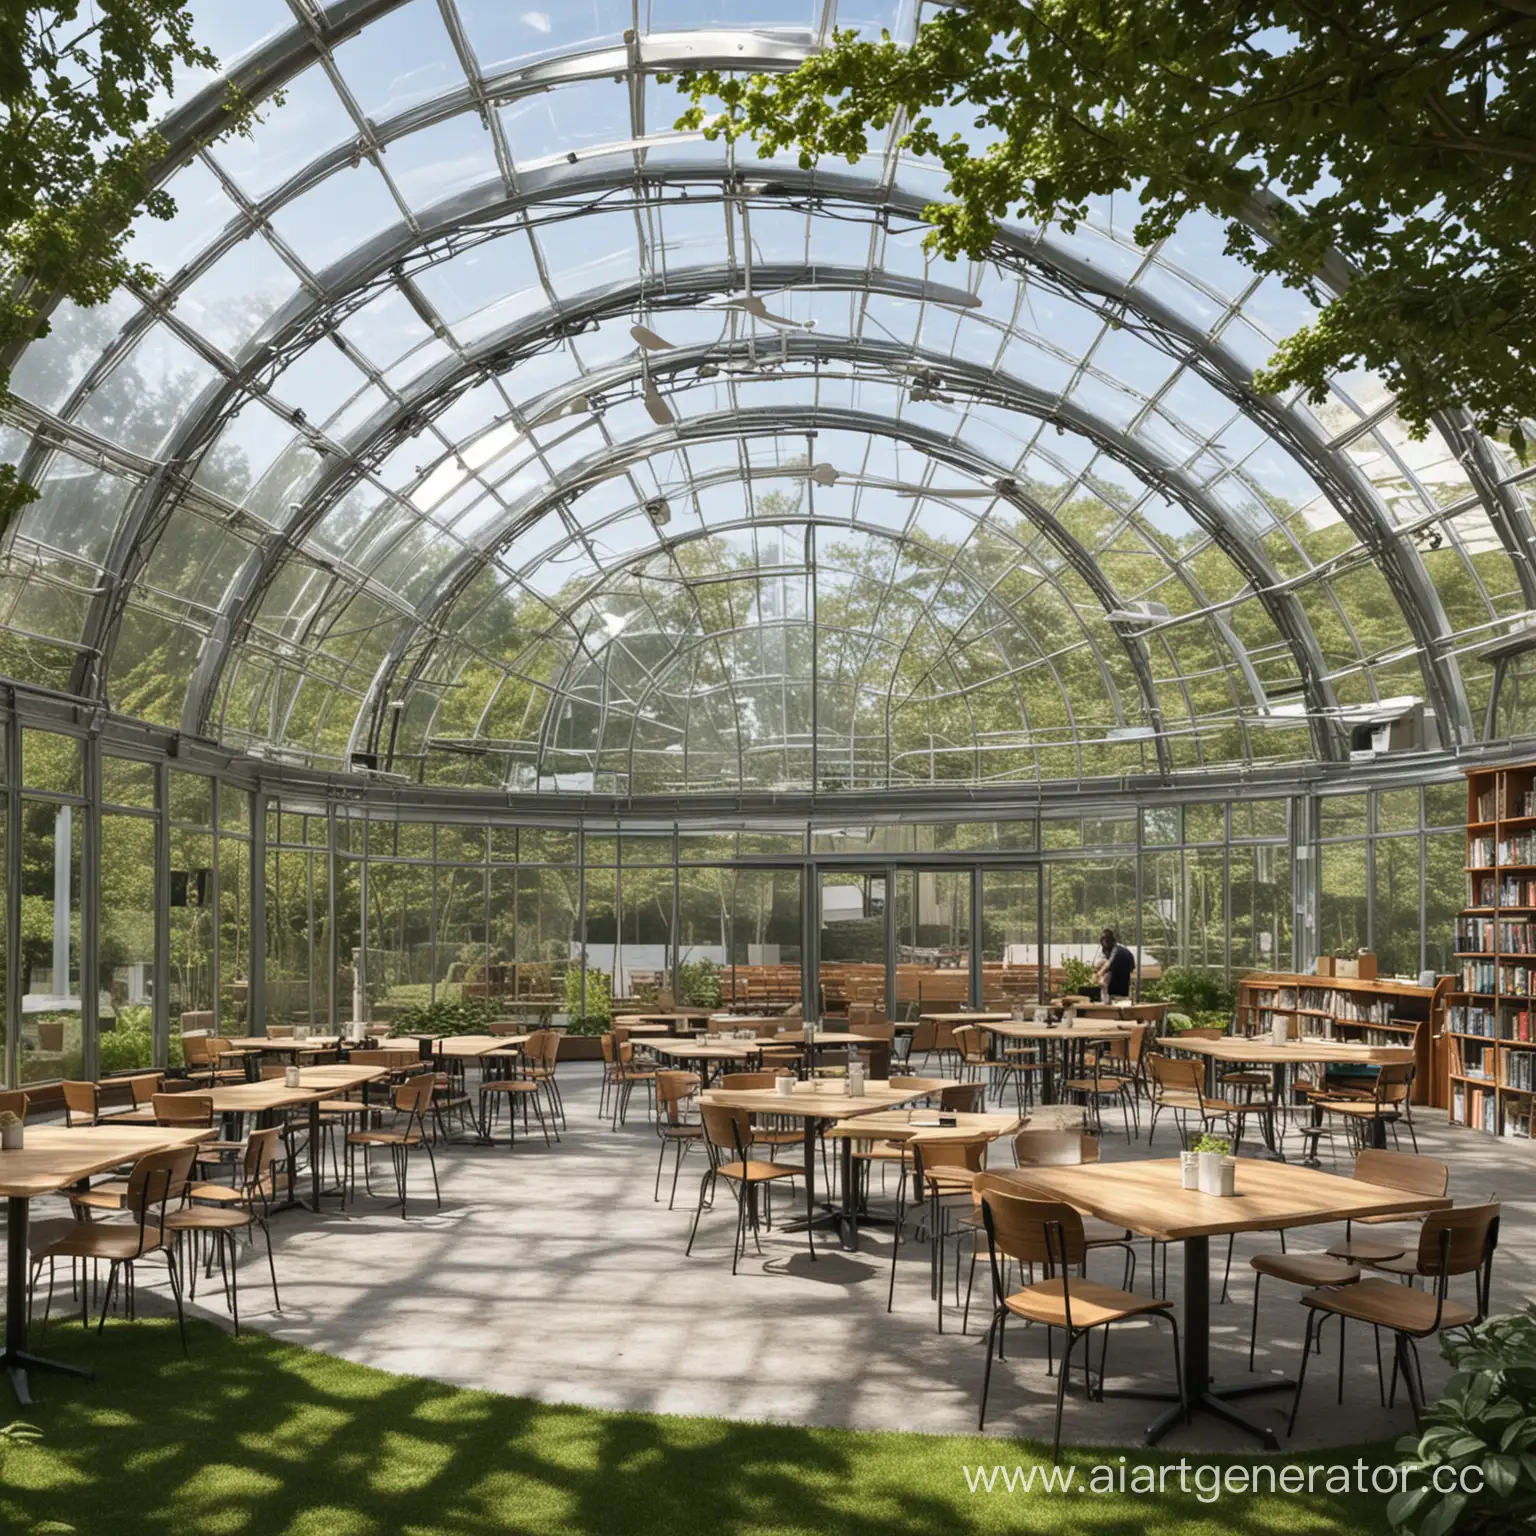 Библиотека- оранжерея, с кофейней, сидячие места в виде амфитеатра, отдельные зоны для конференций, крыша стеклянная как купол